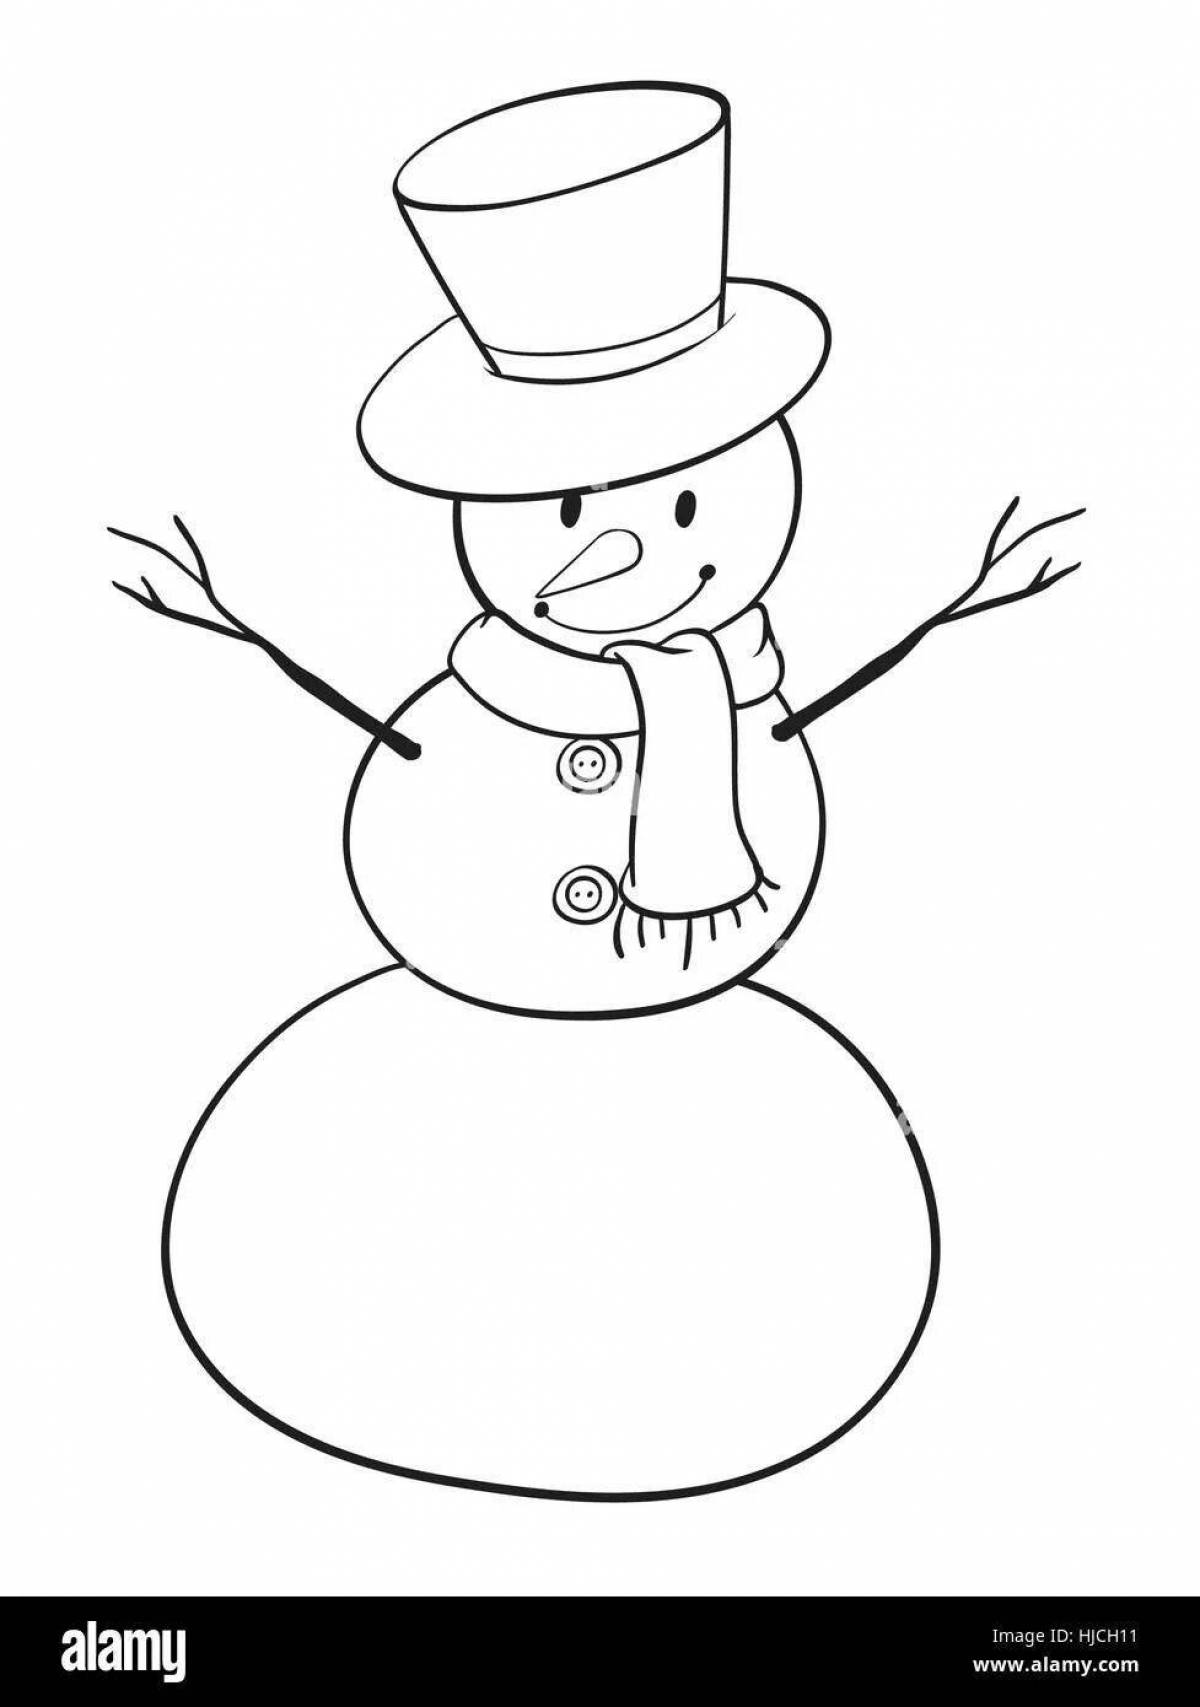 Noseless snowman #1